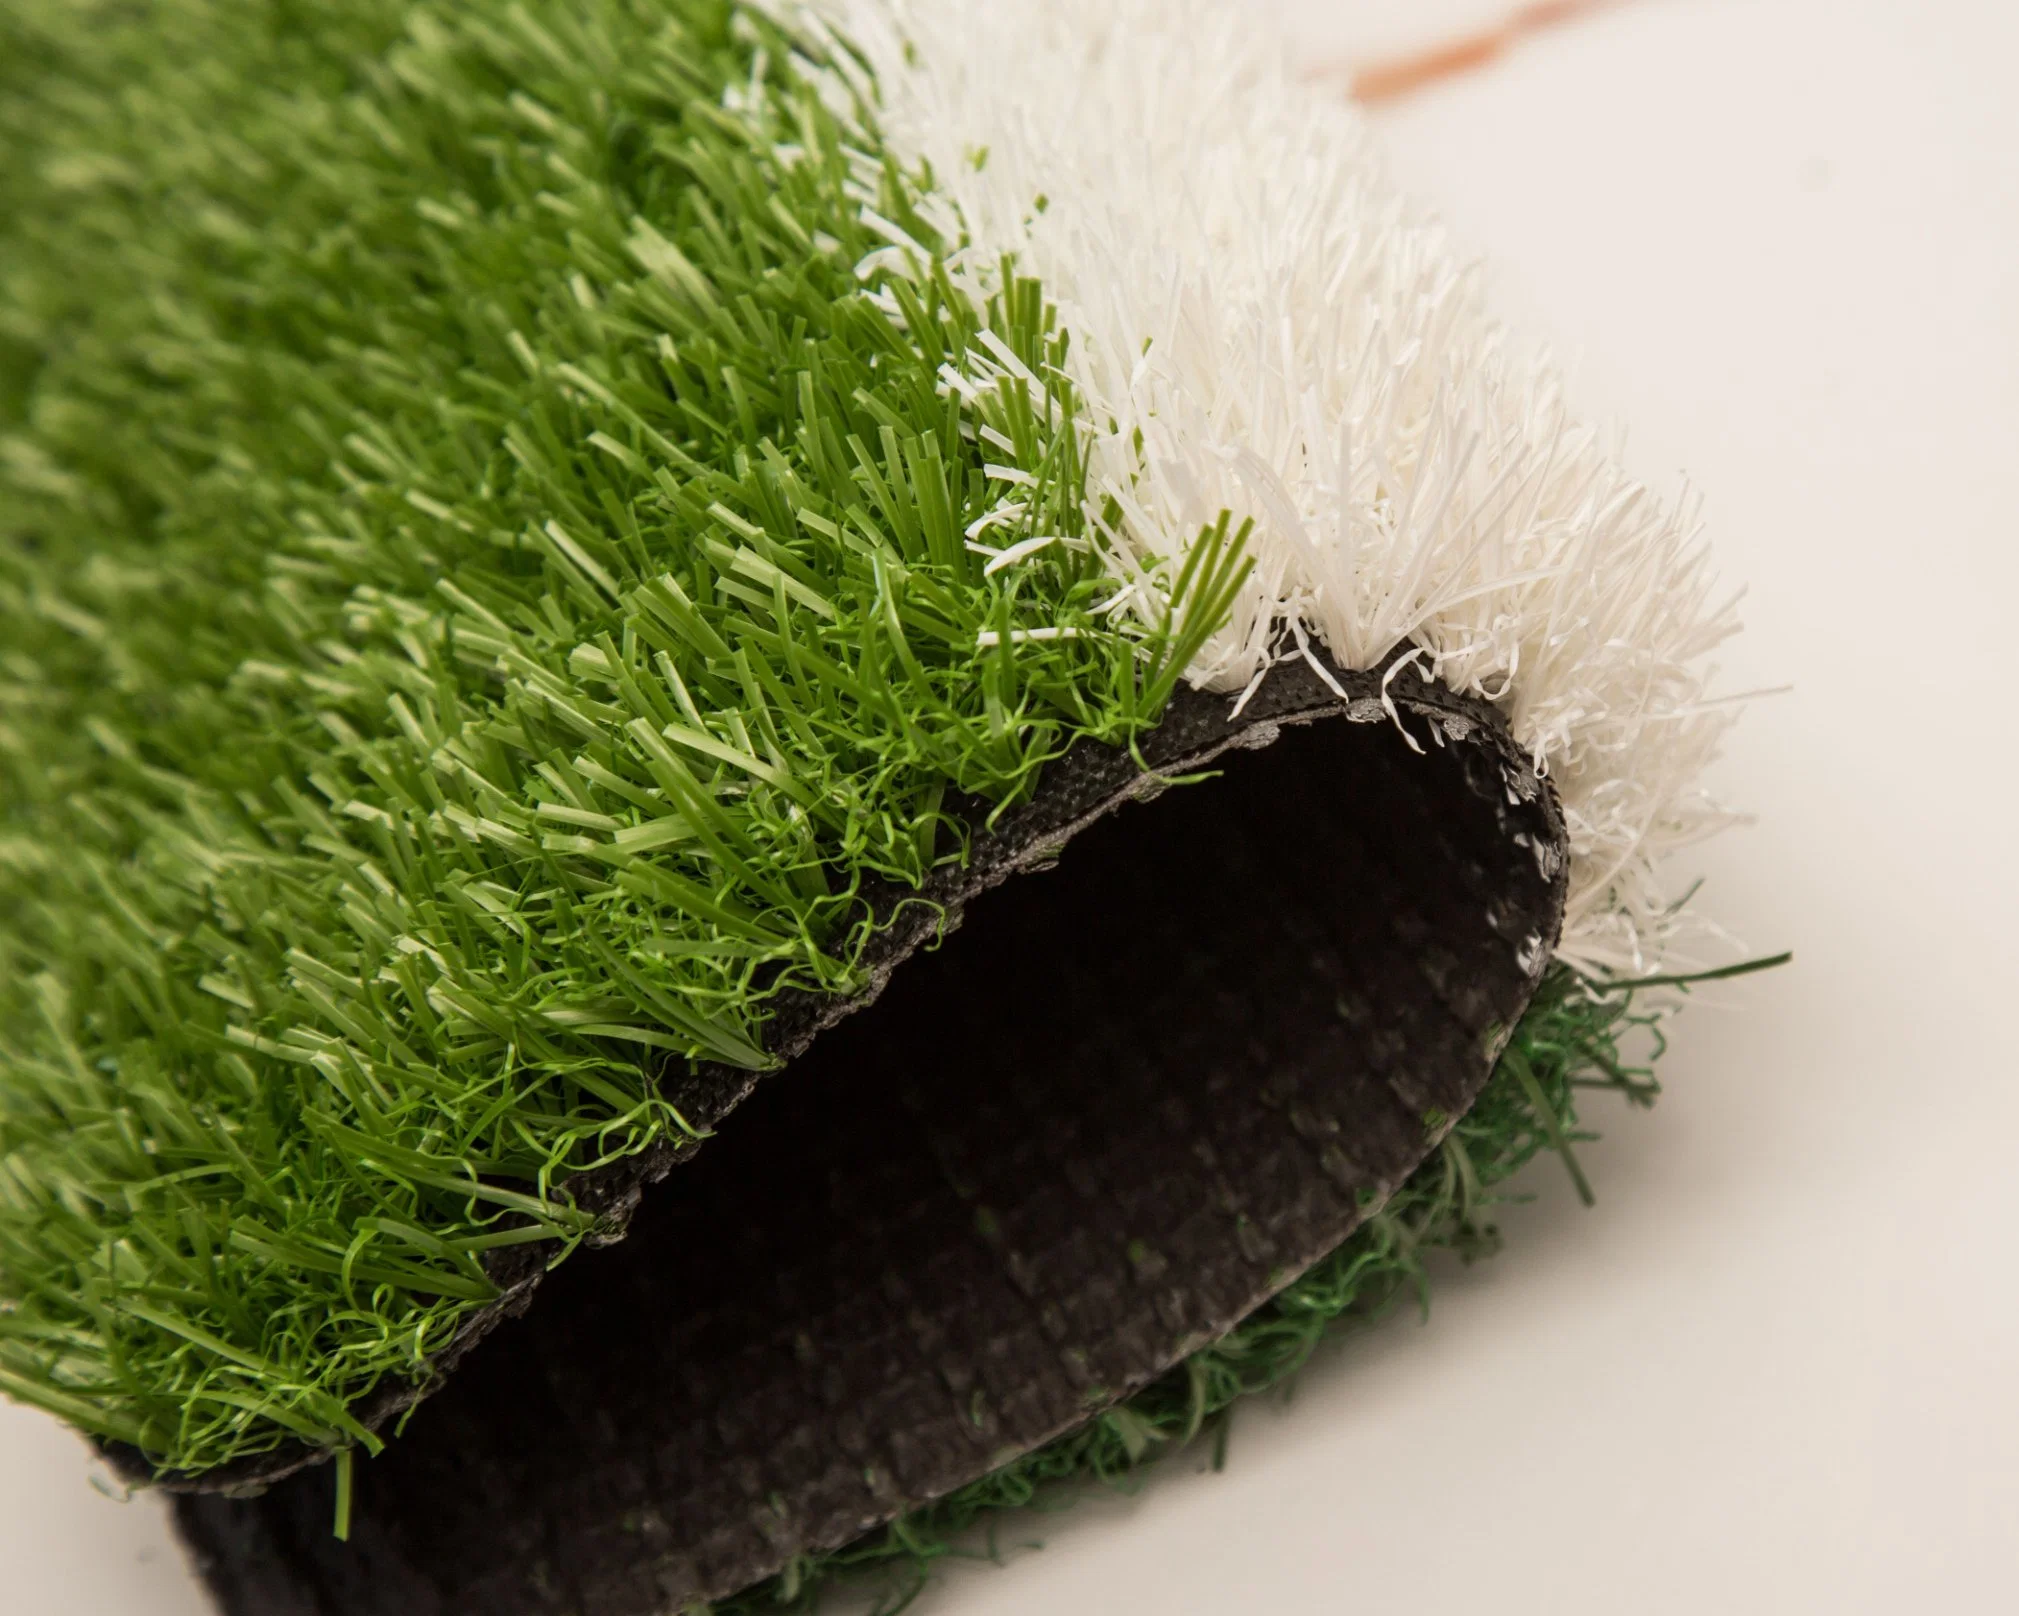 ملئ-Free Football grass Landsurance Outdoor Synthetic Turf Carpet Natural Lawn الحديقة في الداخل